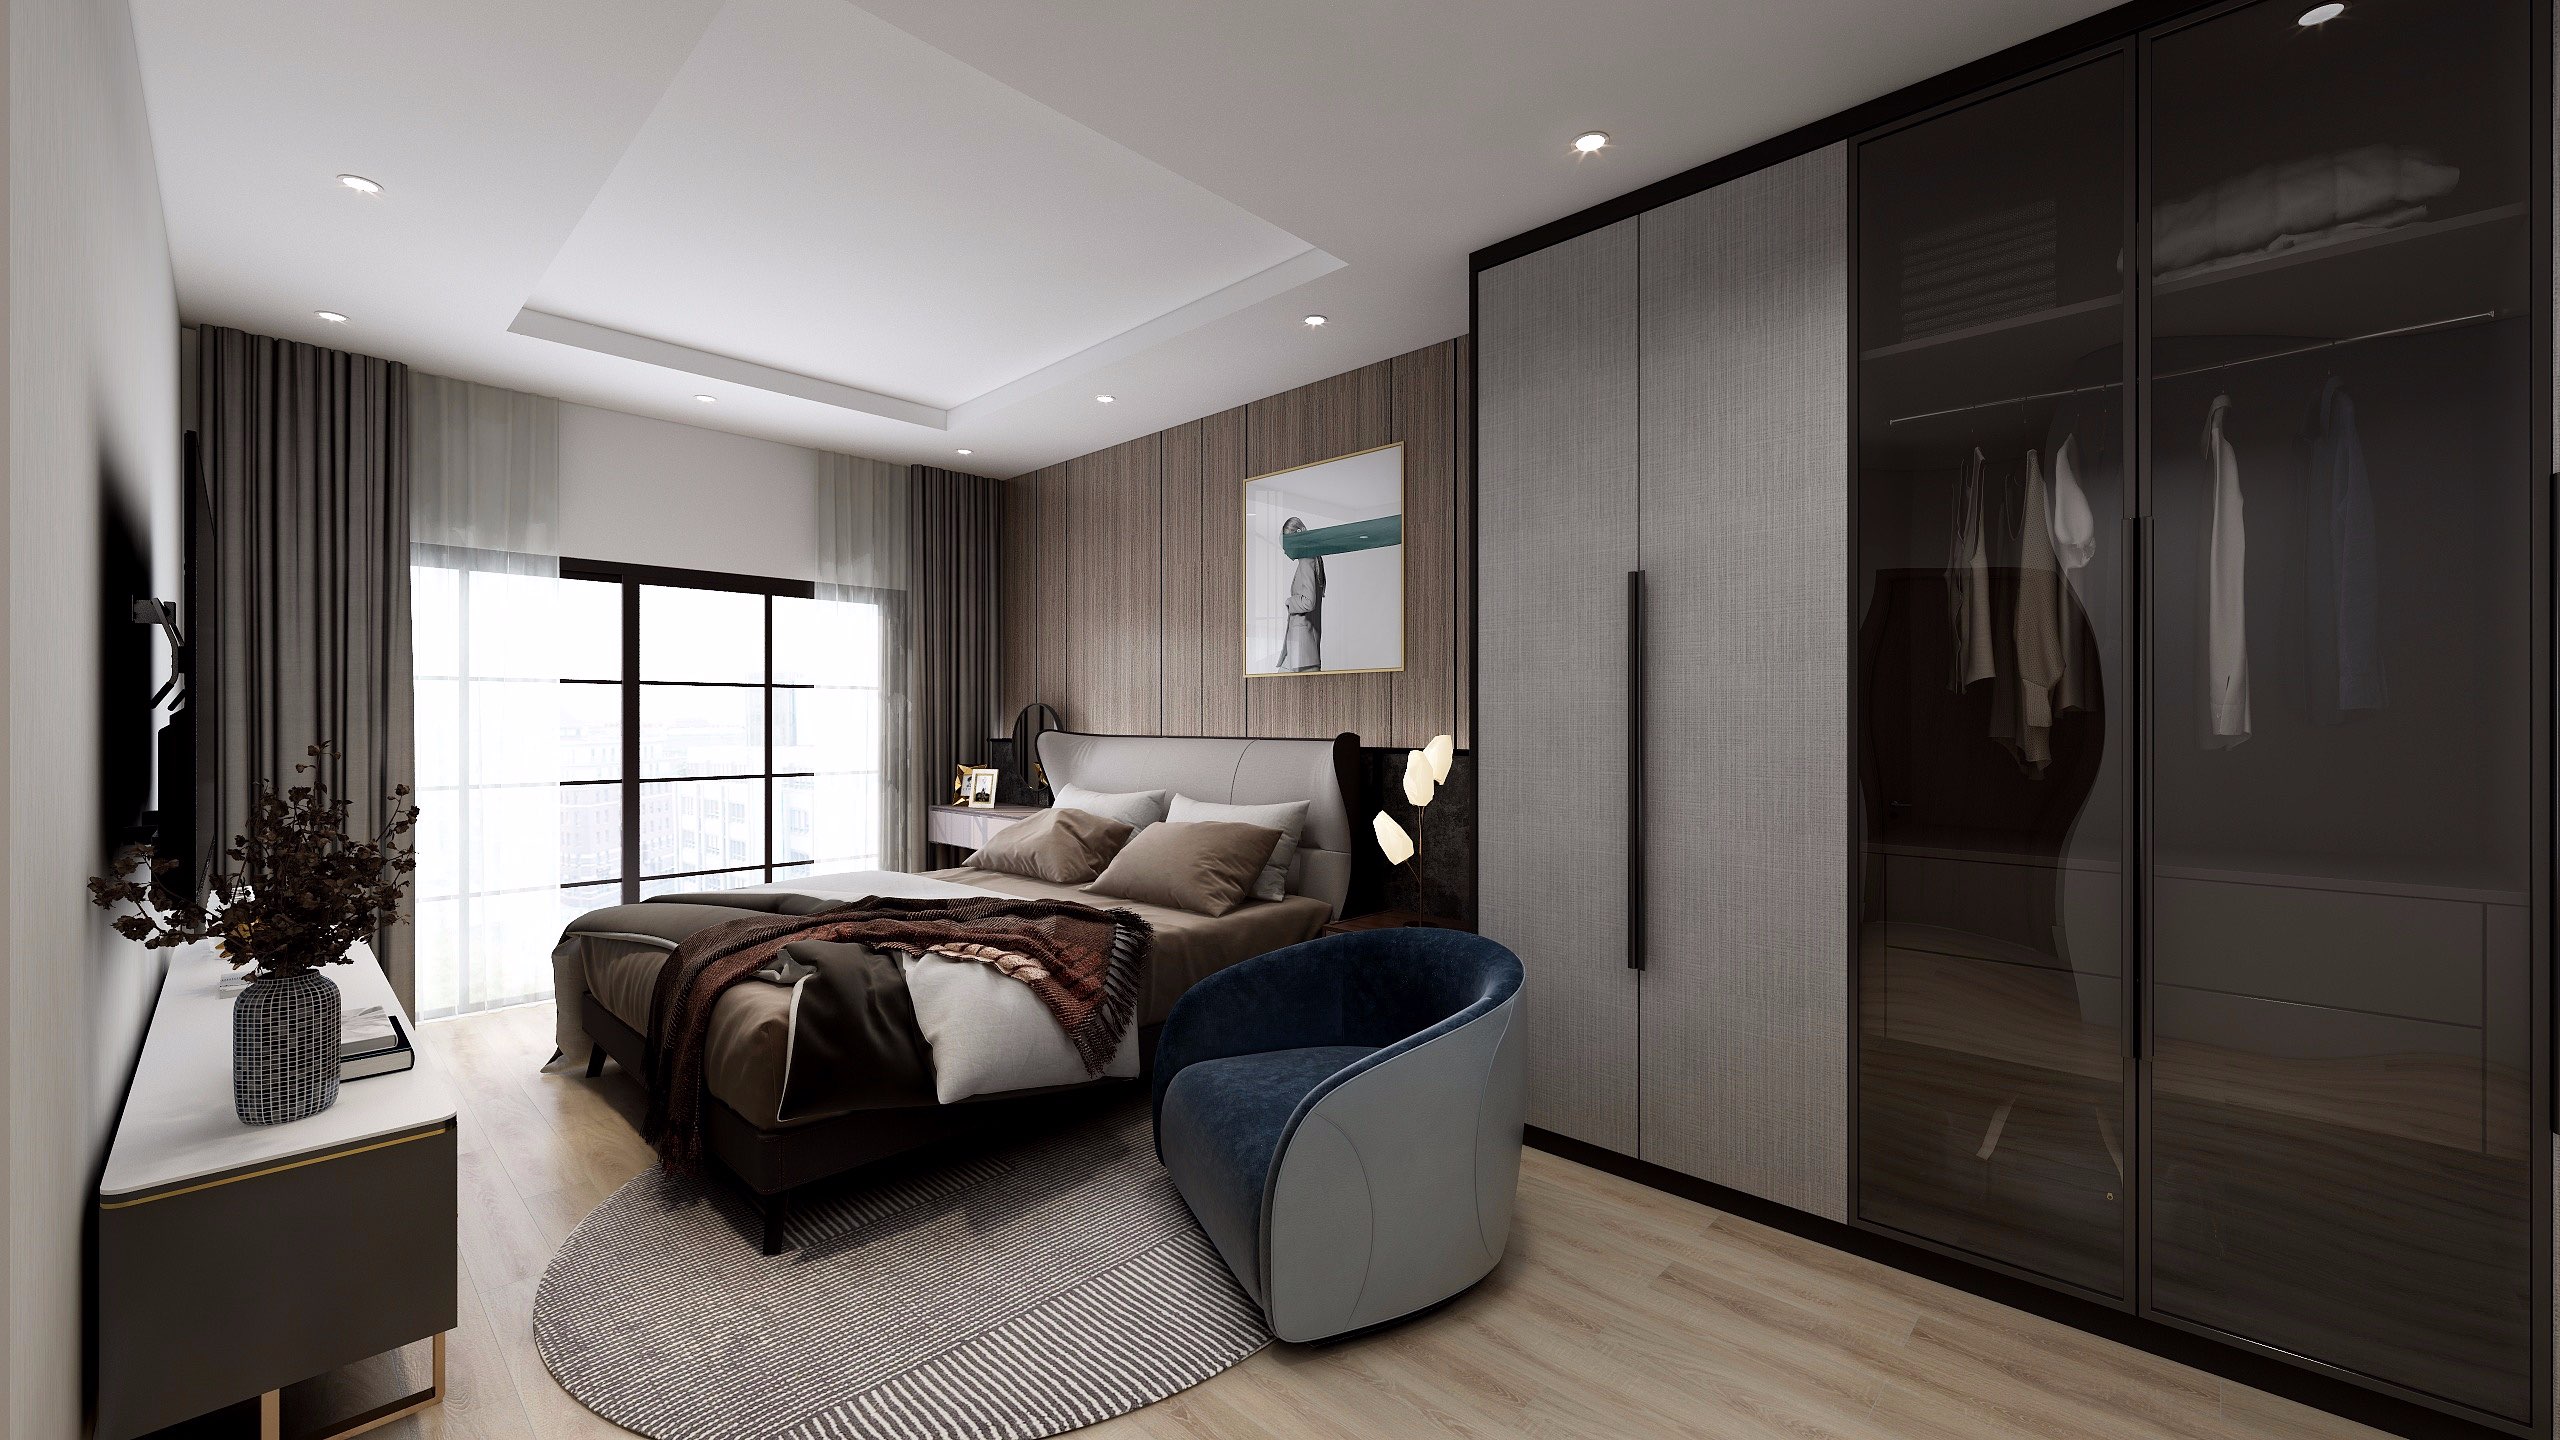 Không gian ngủ được trang bị một loạt các đồ nội thất hiện đại giúp cuộc sống sinh hoạt vợ chồng thêm tiện nghi